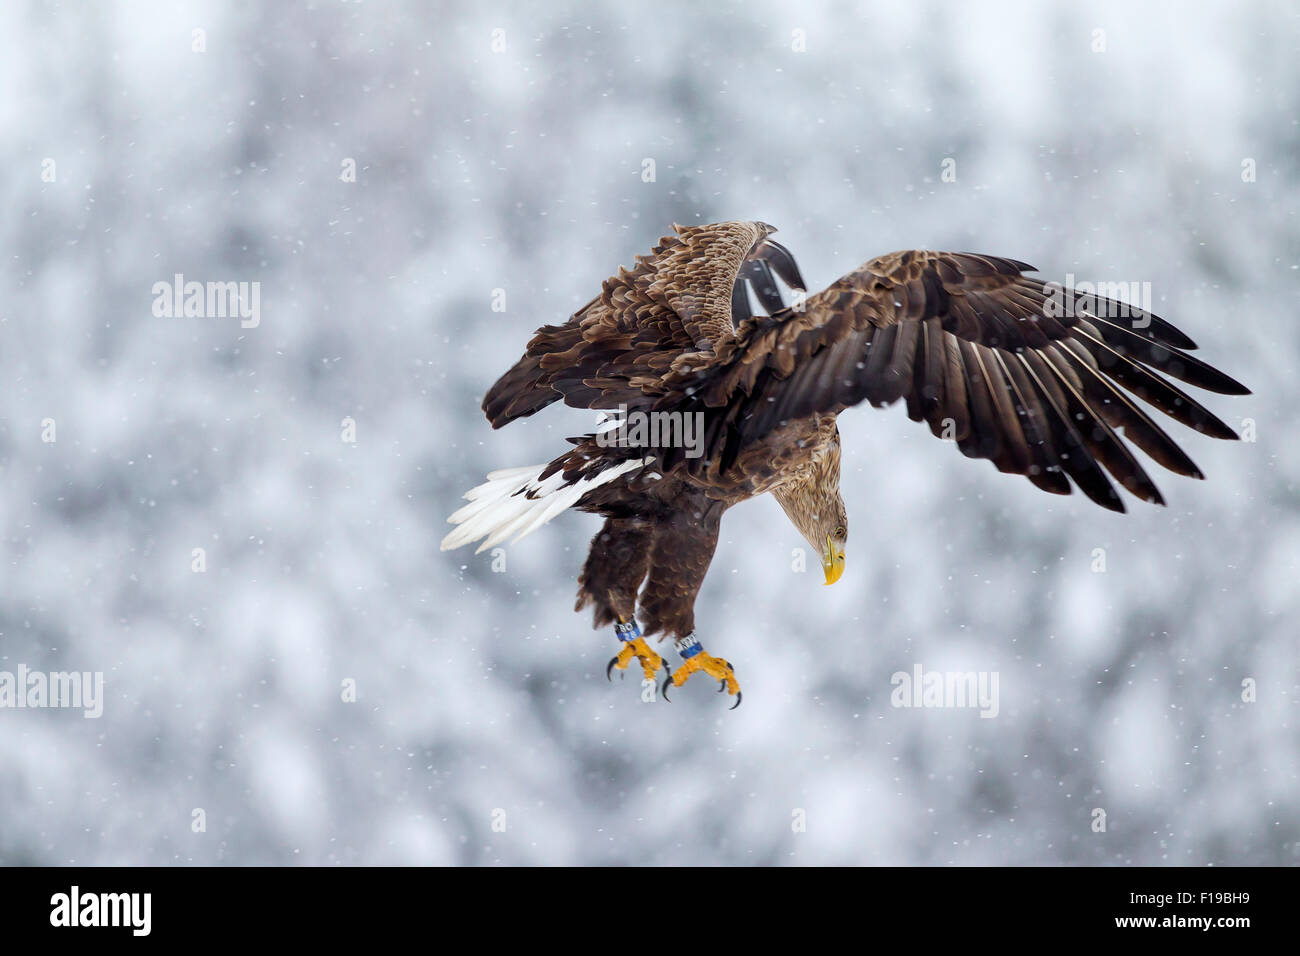 El águila de cola blanca / Águila de Mar / Erne (Haliaeetus albicilla) con las alas abiertas de aterrizaje en la nieve en invierno Foto de stock